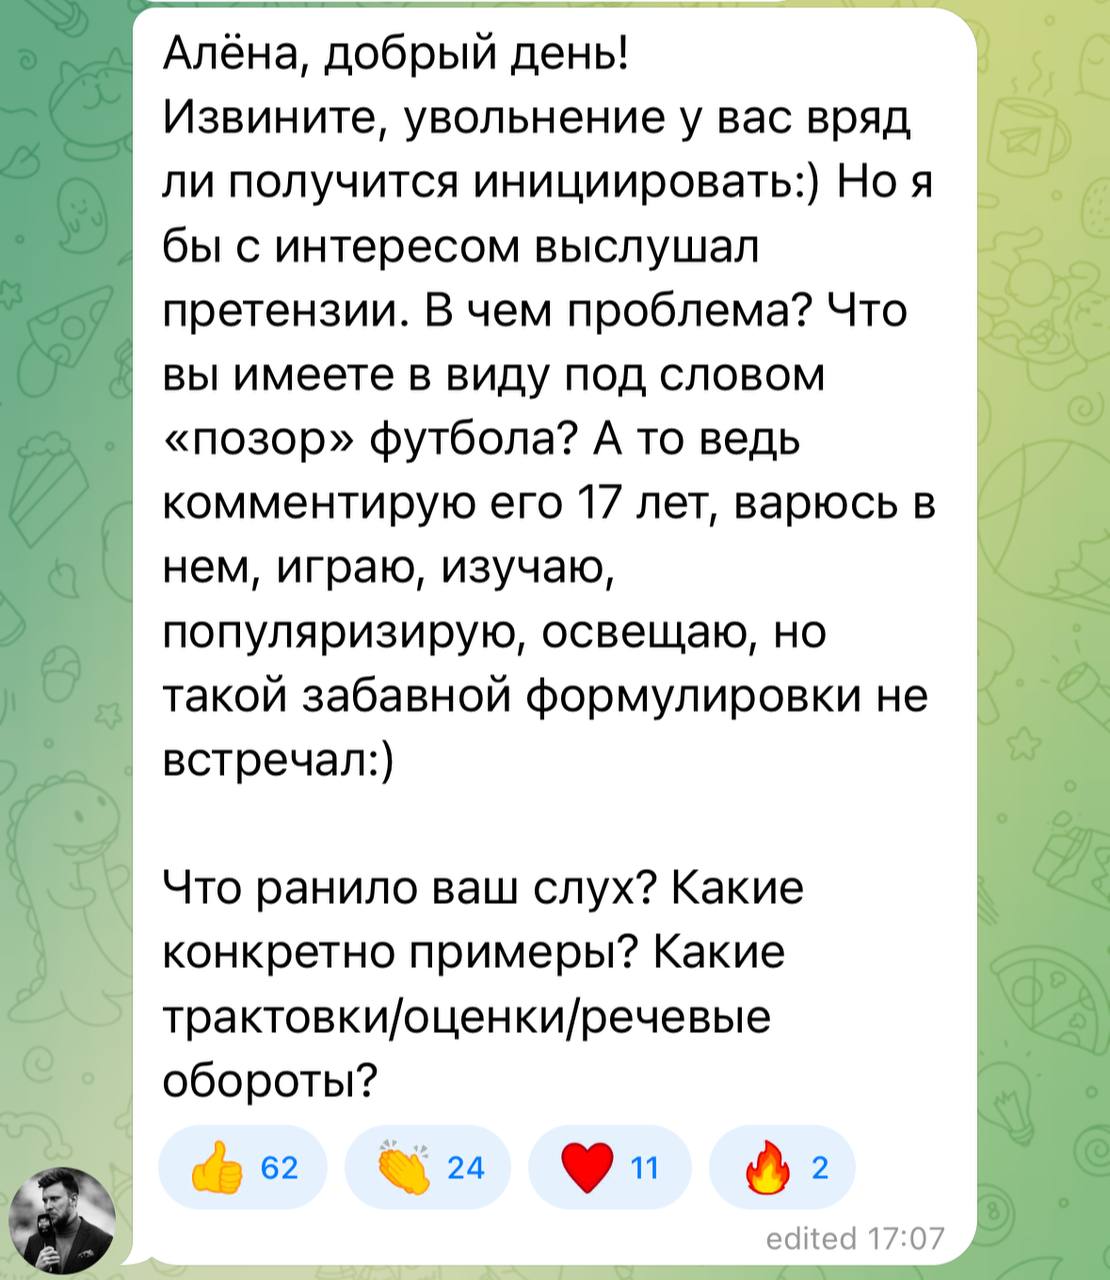 Реакция Шнякина на пост Долецкой